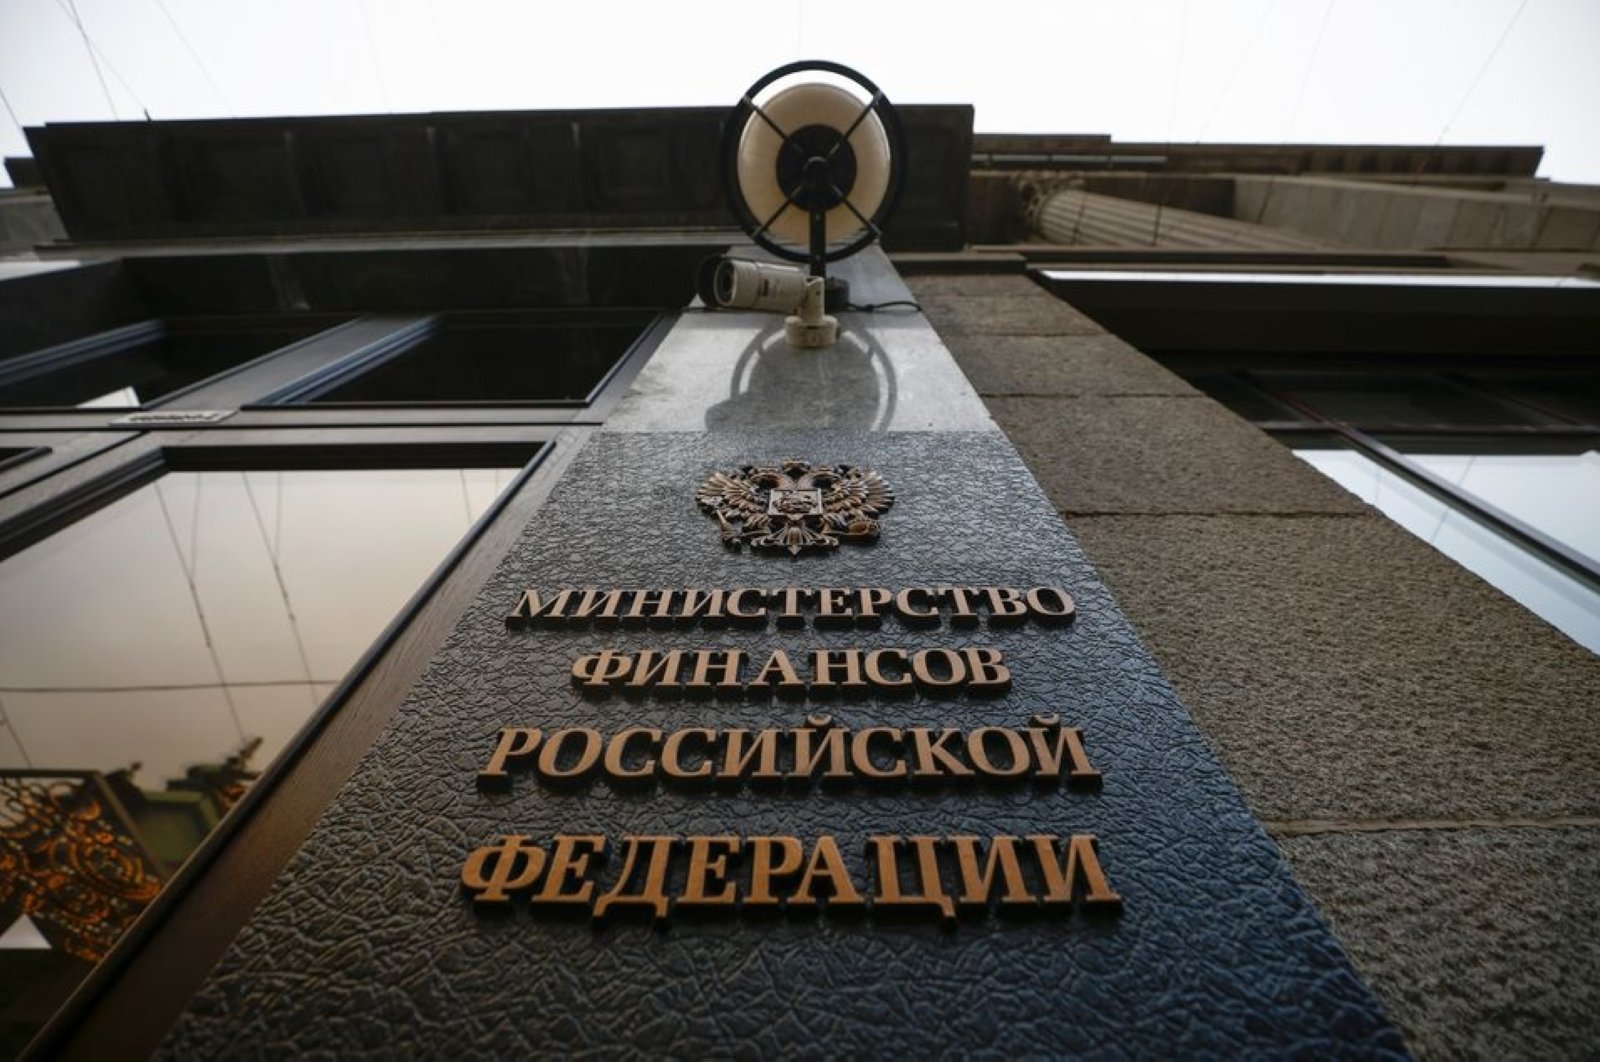 Rusia melakukan pembayaran utang, menghindari default setelah sanksi